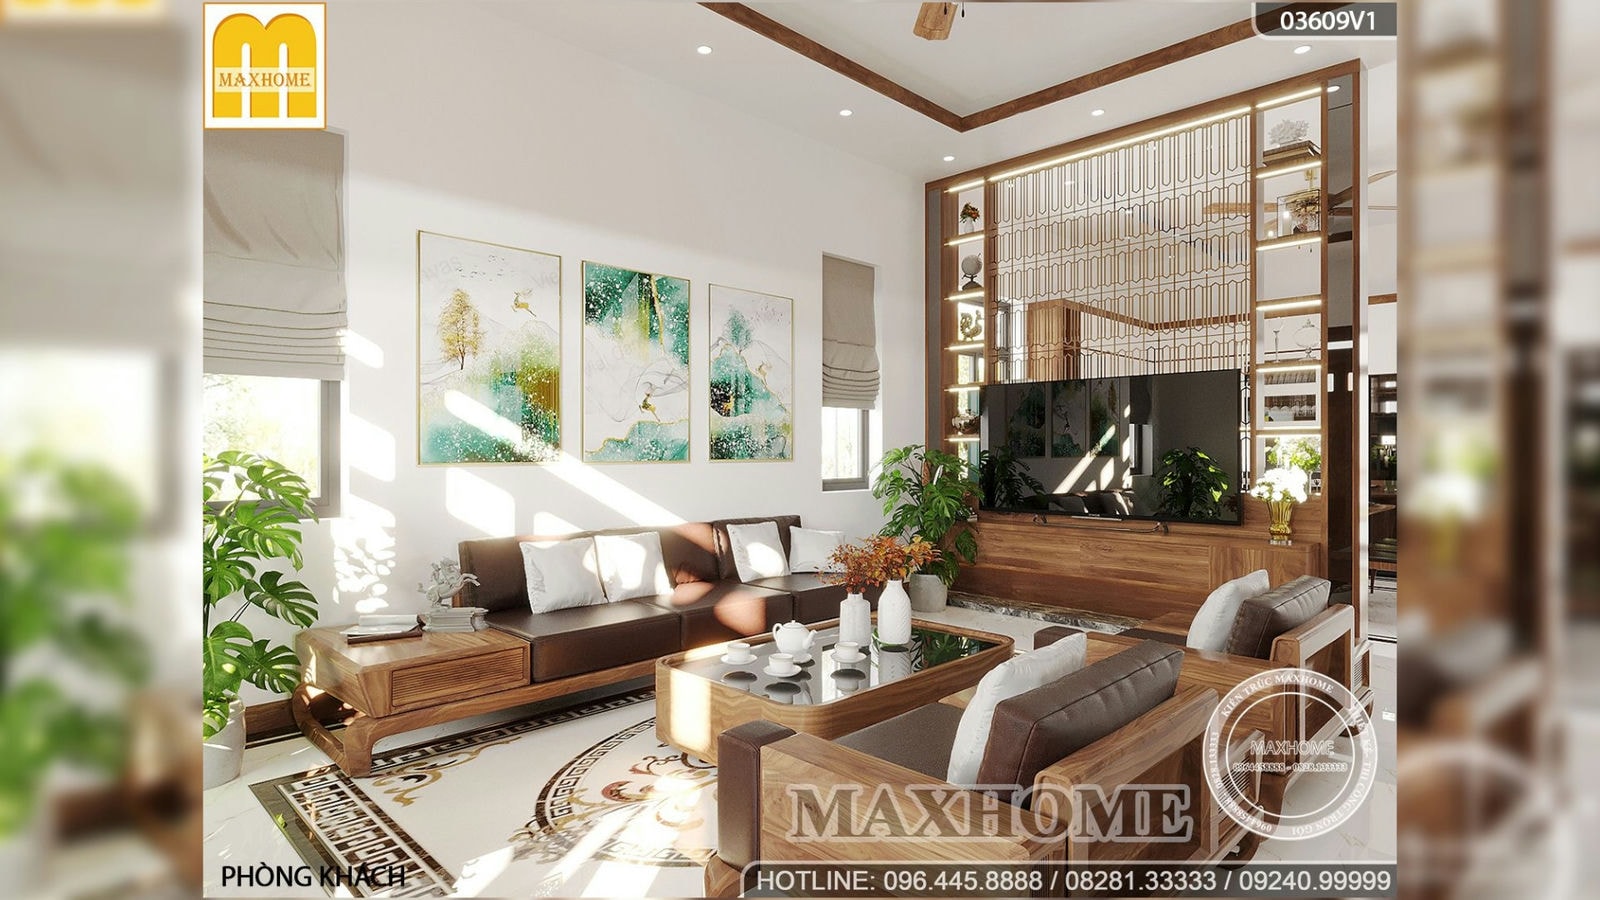 Ngắm nhìn bộ nội thất hiện đại đẹp sang trọng và thời thượng do Maxhome thiết kế